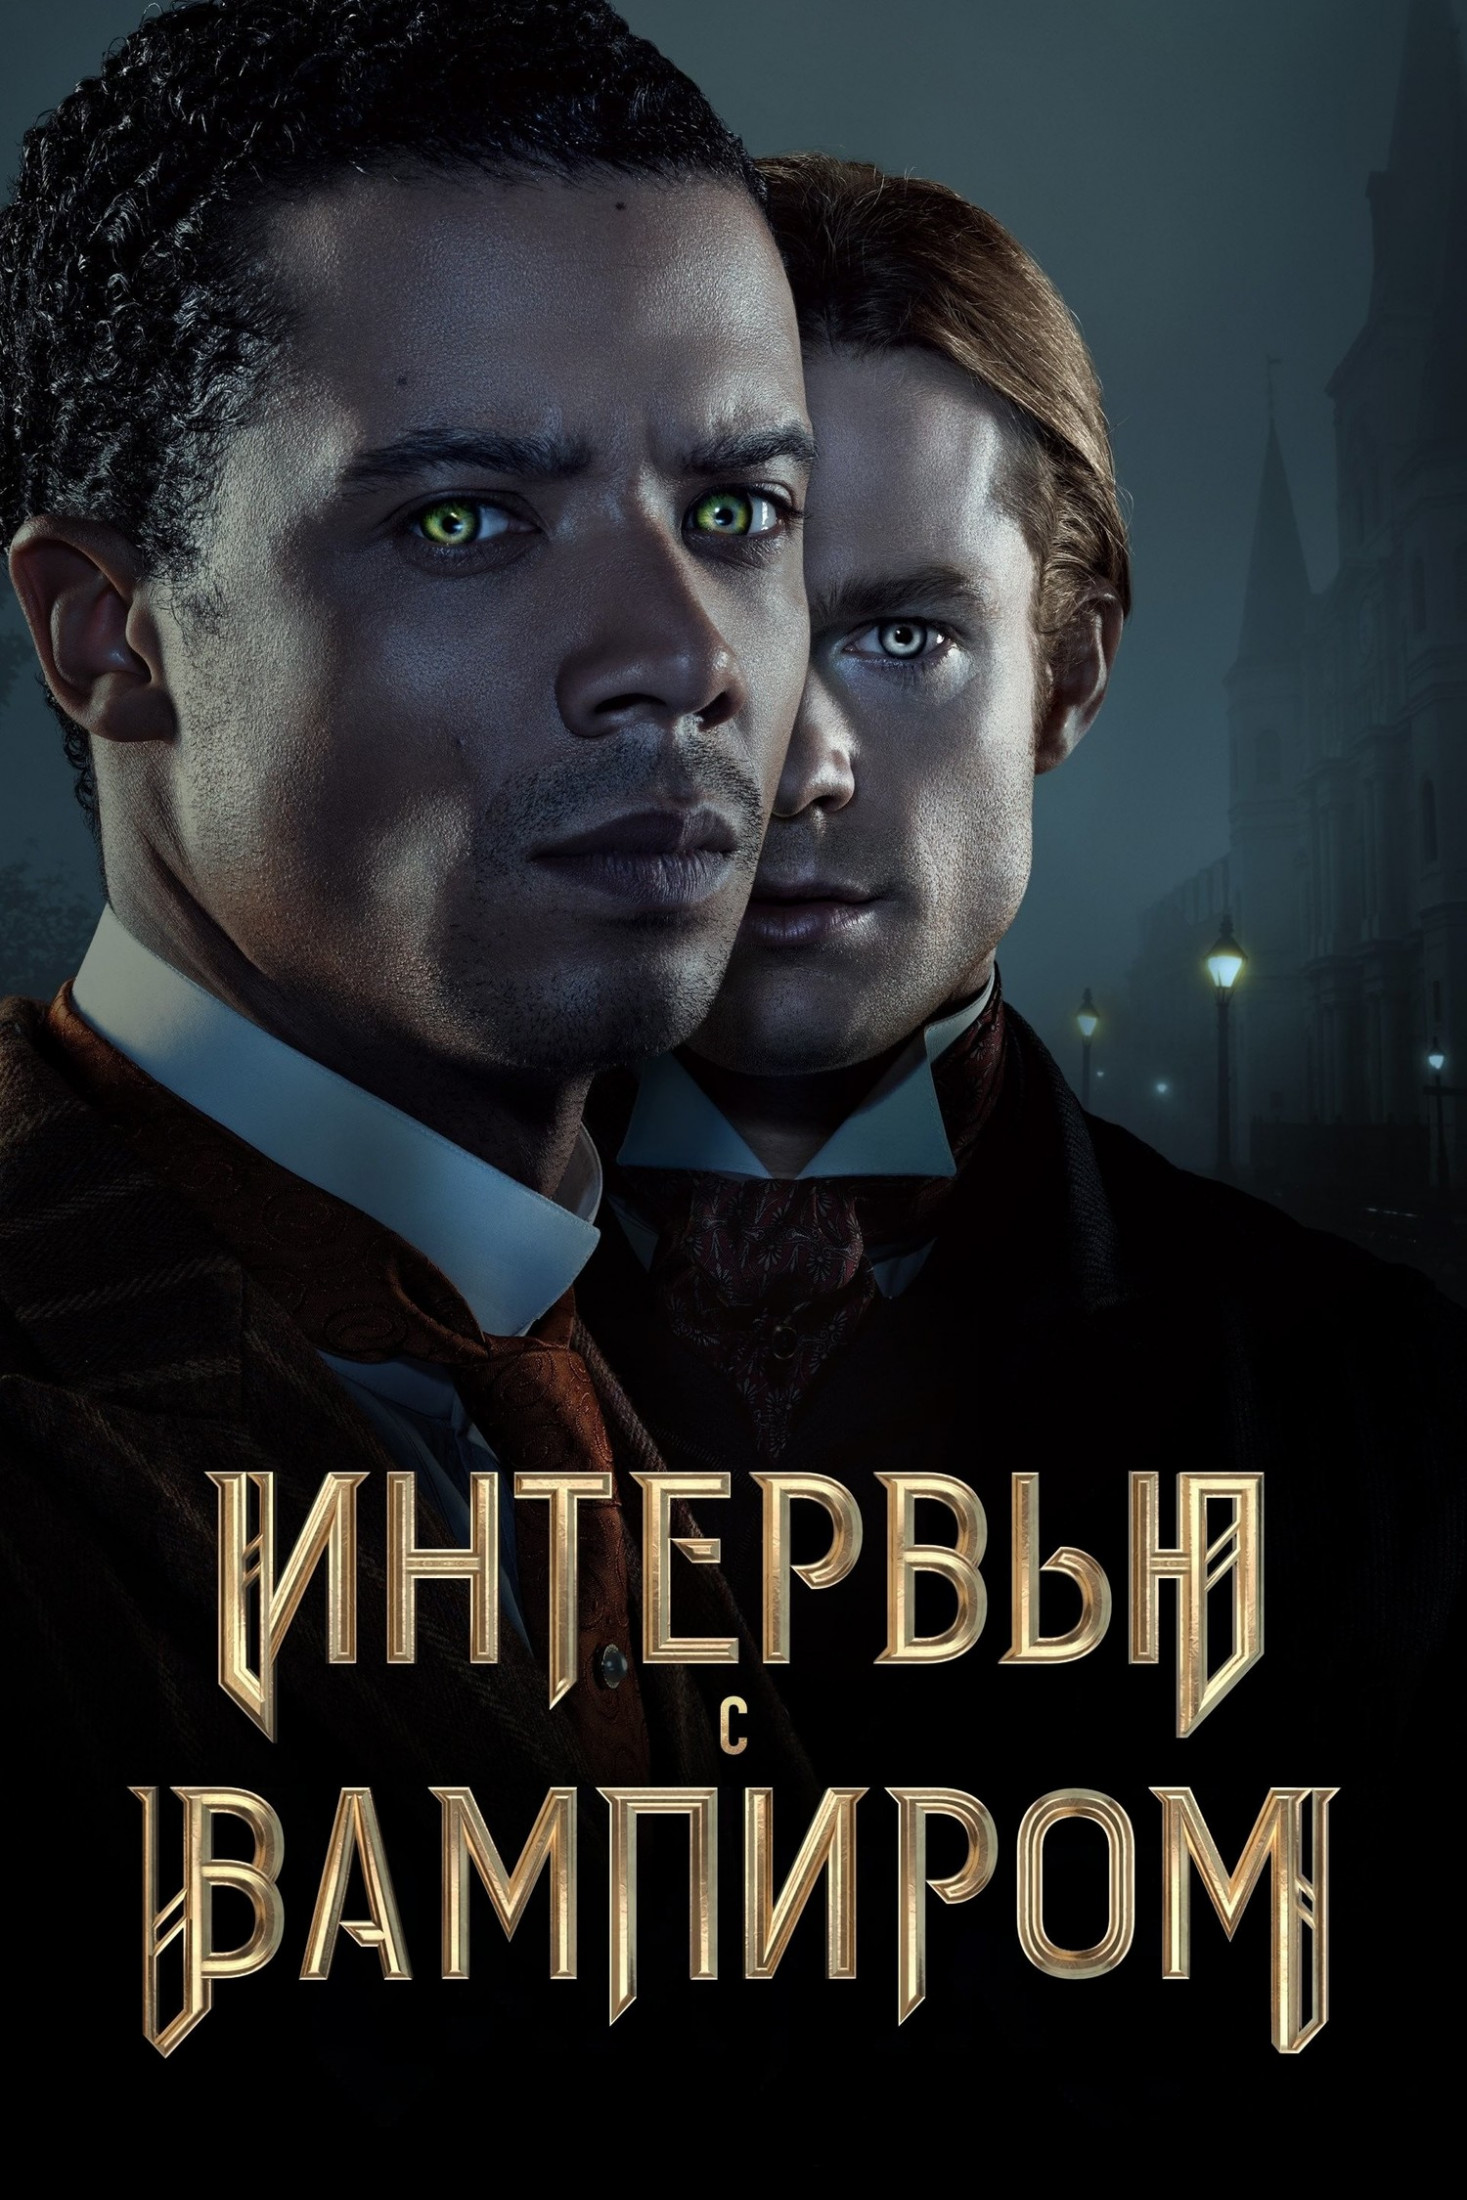 Сериал "Интервью с вампиром" добрался до России